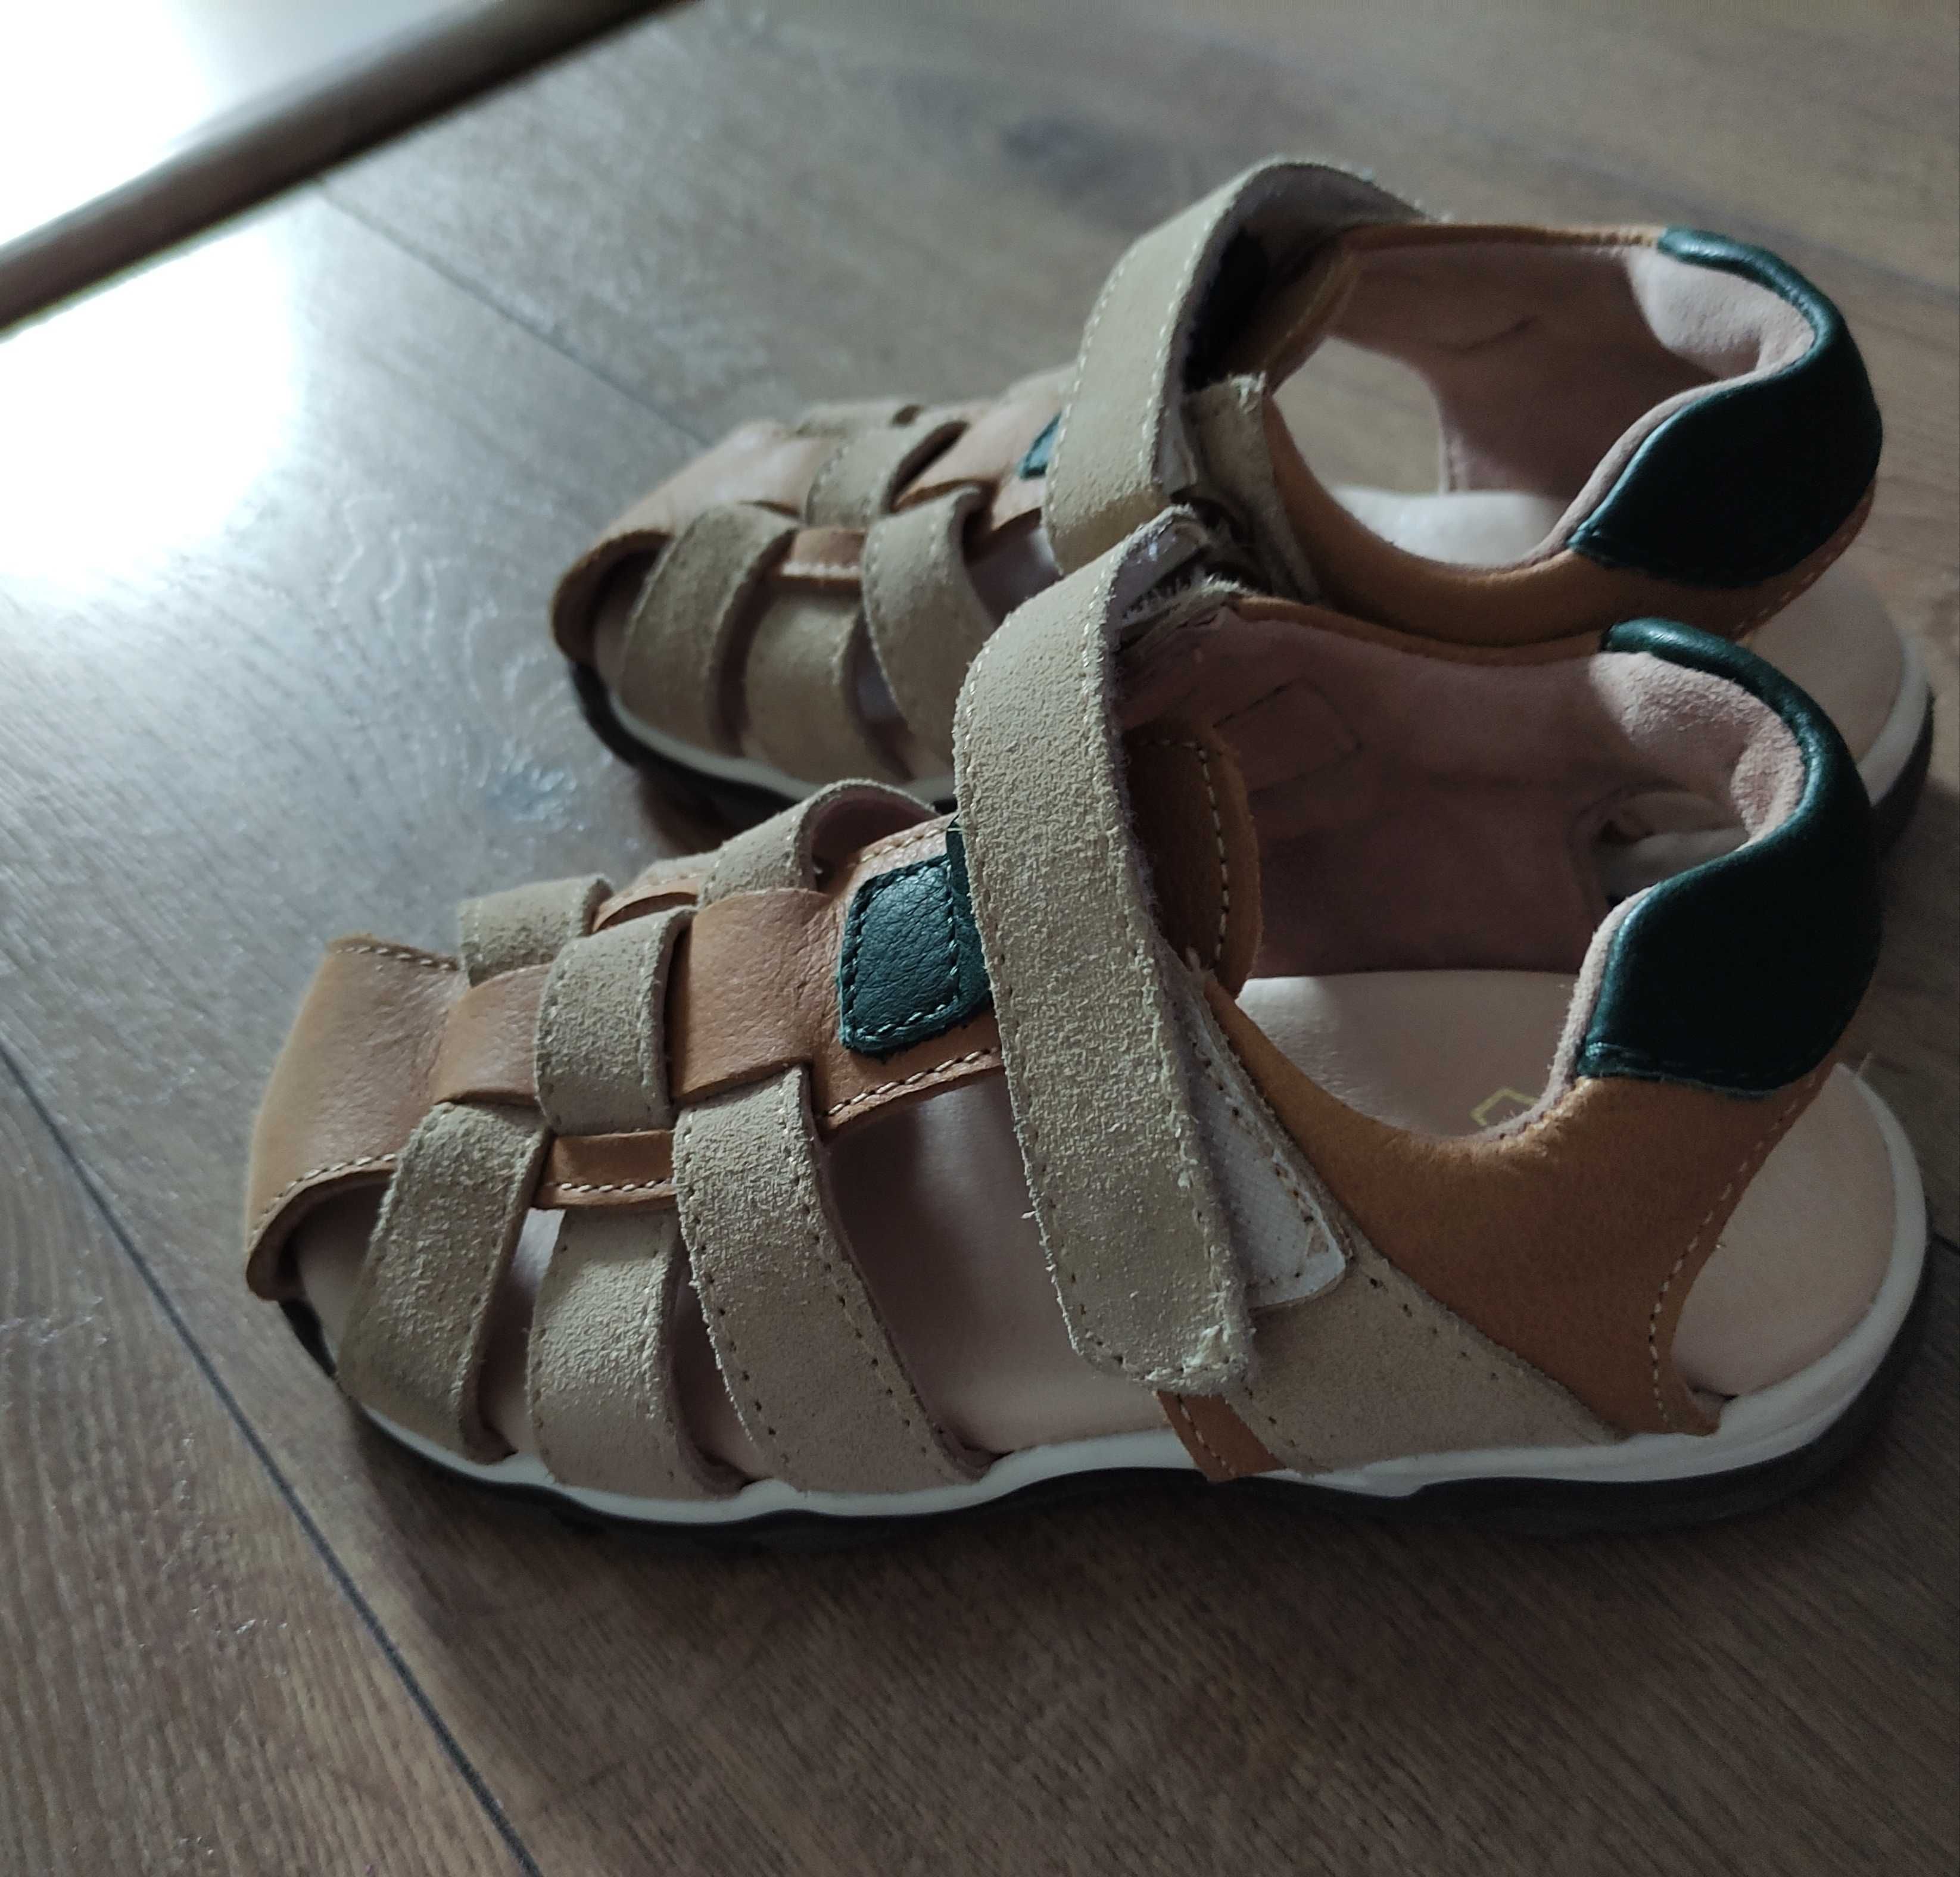 Oferta! Sandale din piele pentru copii copil marime 28 made in Romania